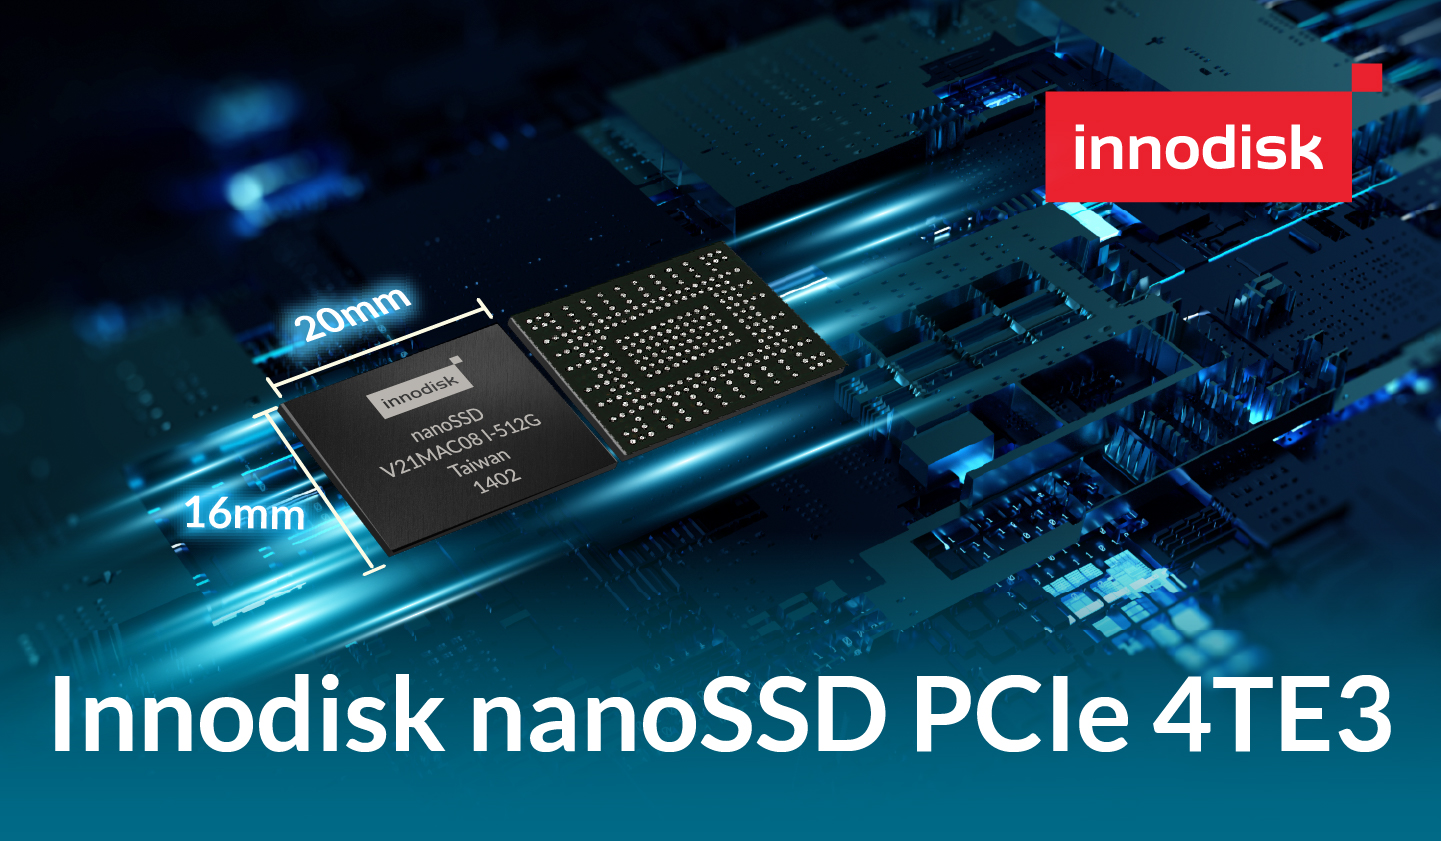 Innodisk presenta el primer PCIe nanoSSD 4TE3 con tamaño compacto, confiabilidad y rendimiento para desbloquear aplicaciones 5G, automotrices y aeroespaciales